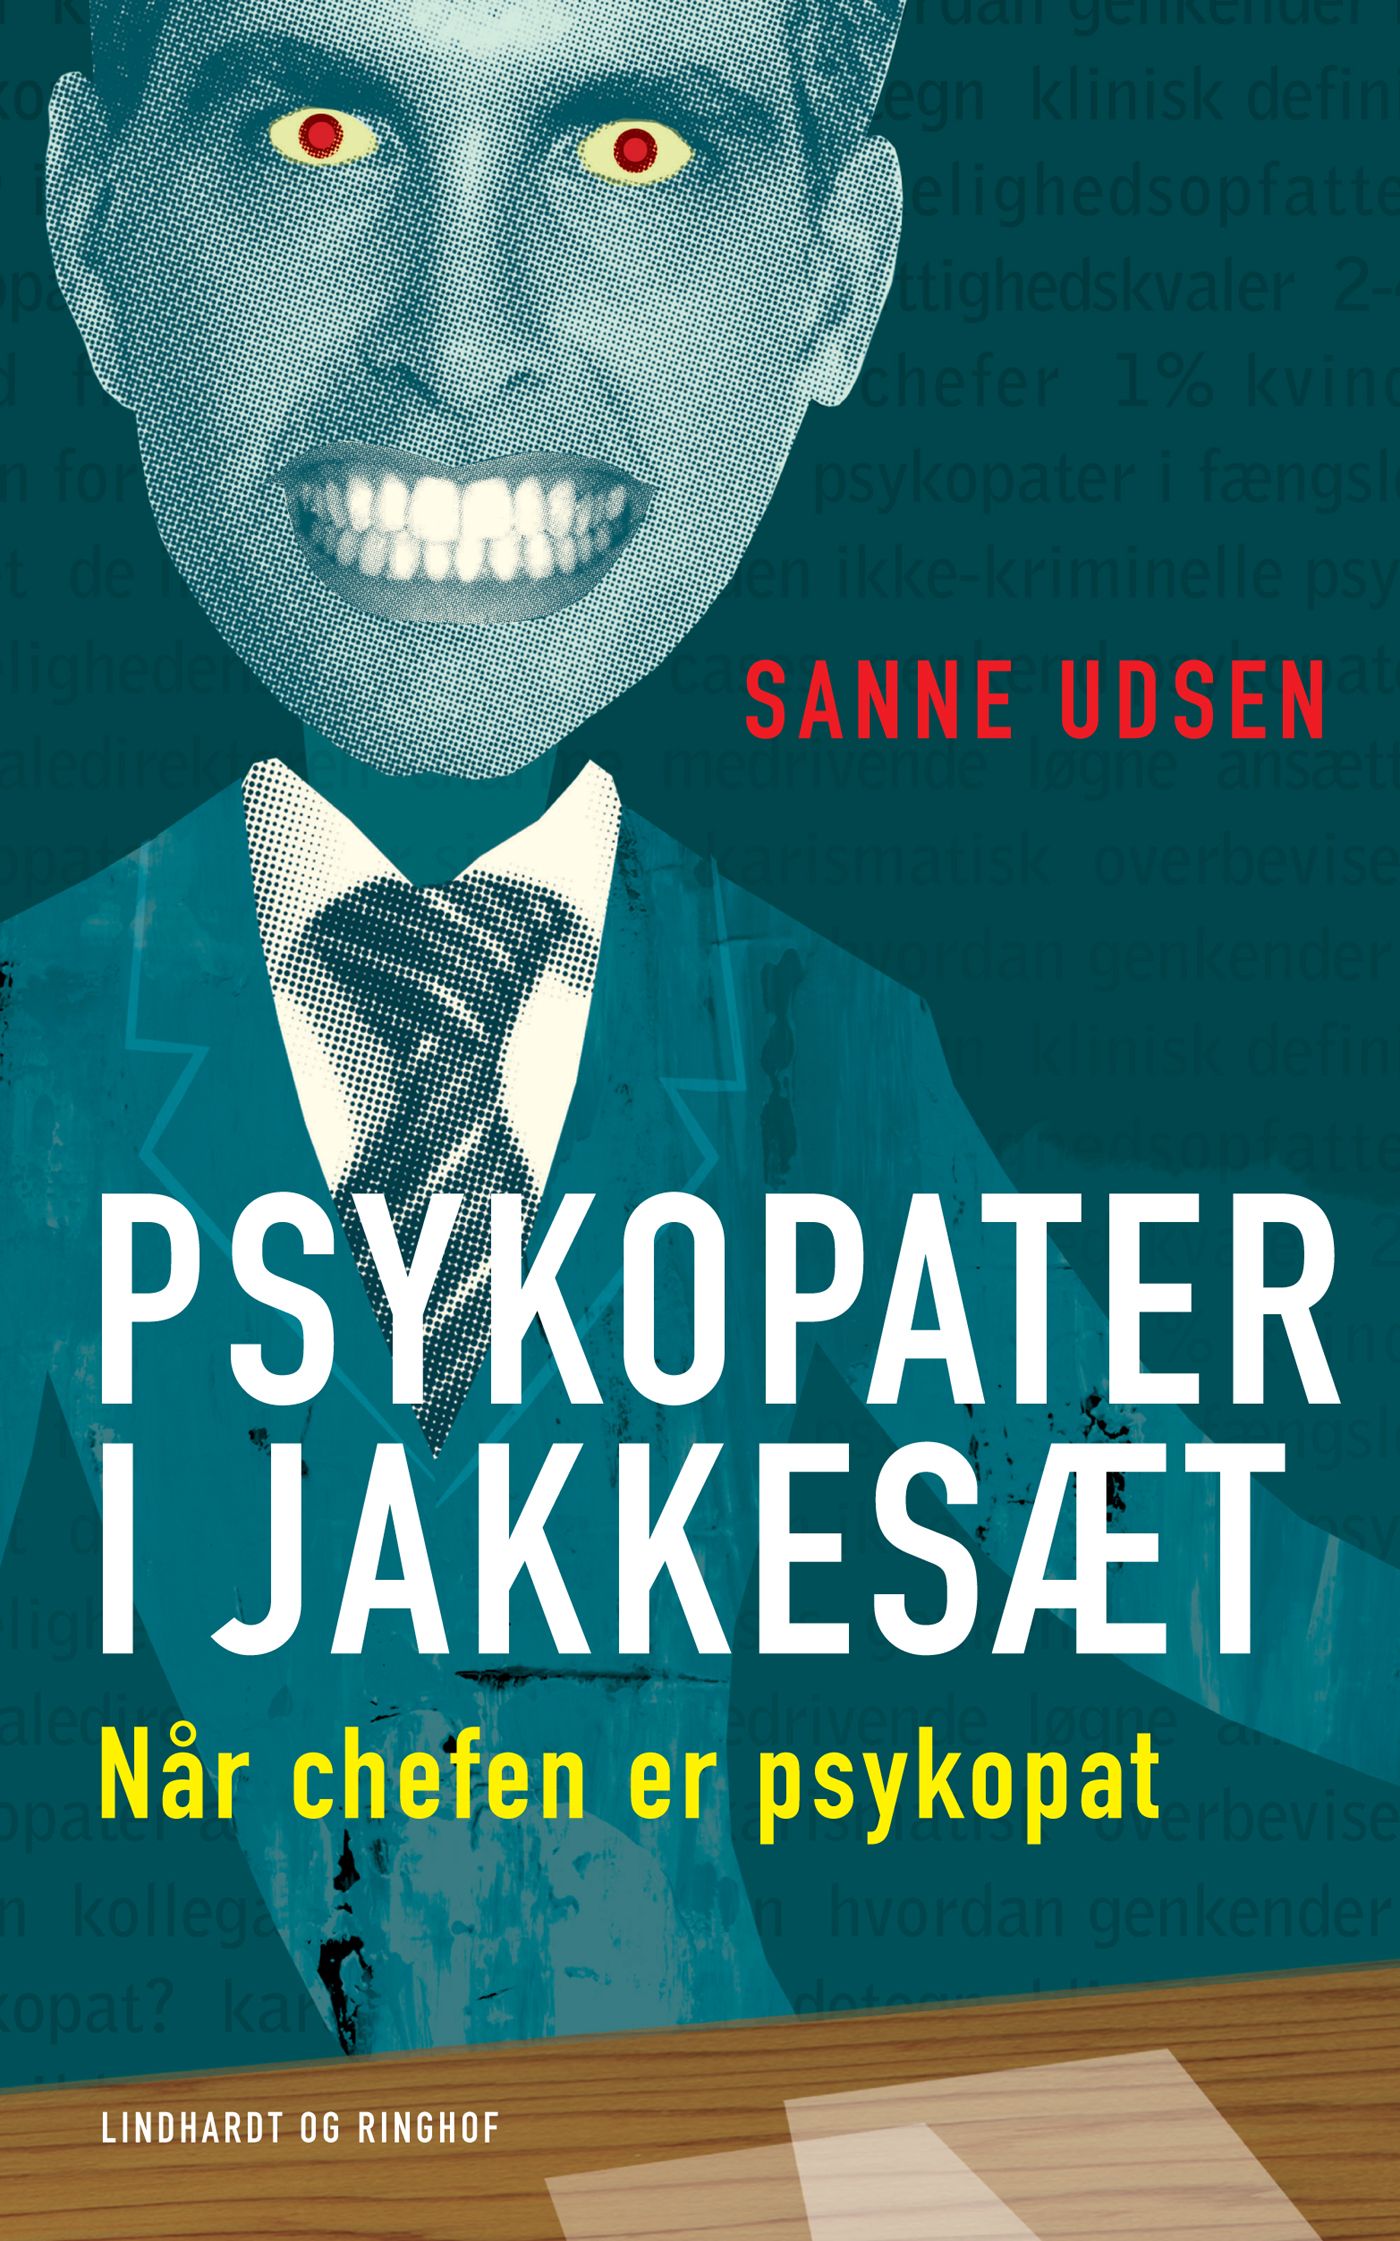 Psykopater i jakkesæt, e-bok av Sanne Udsen